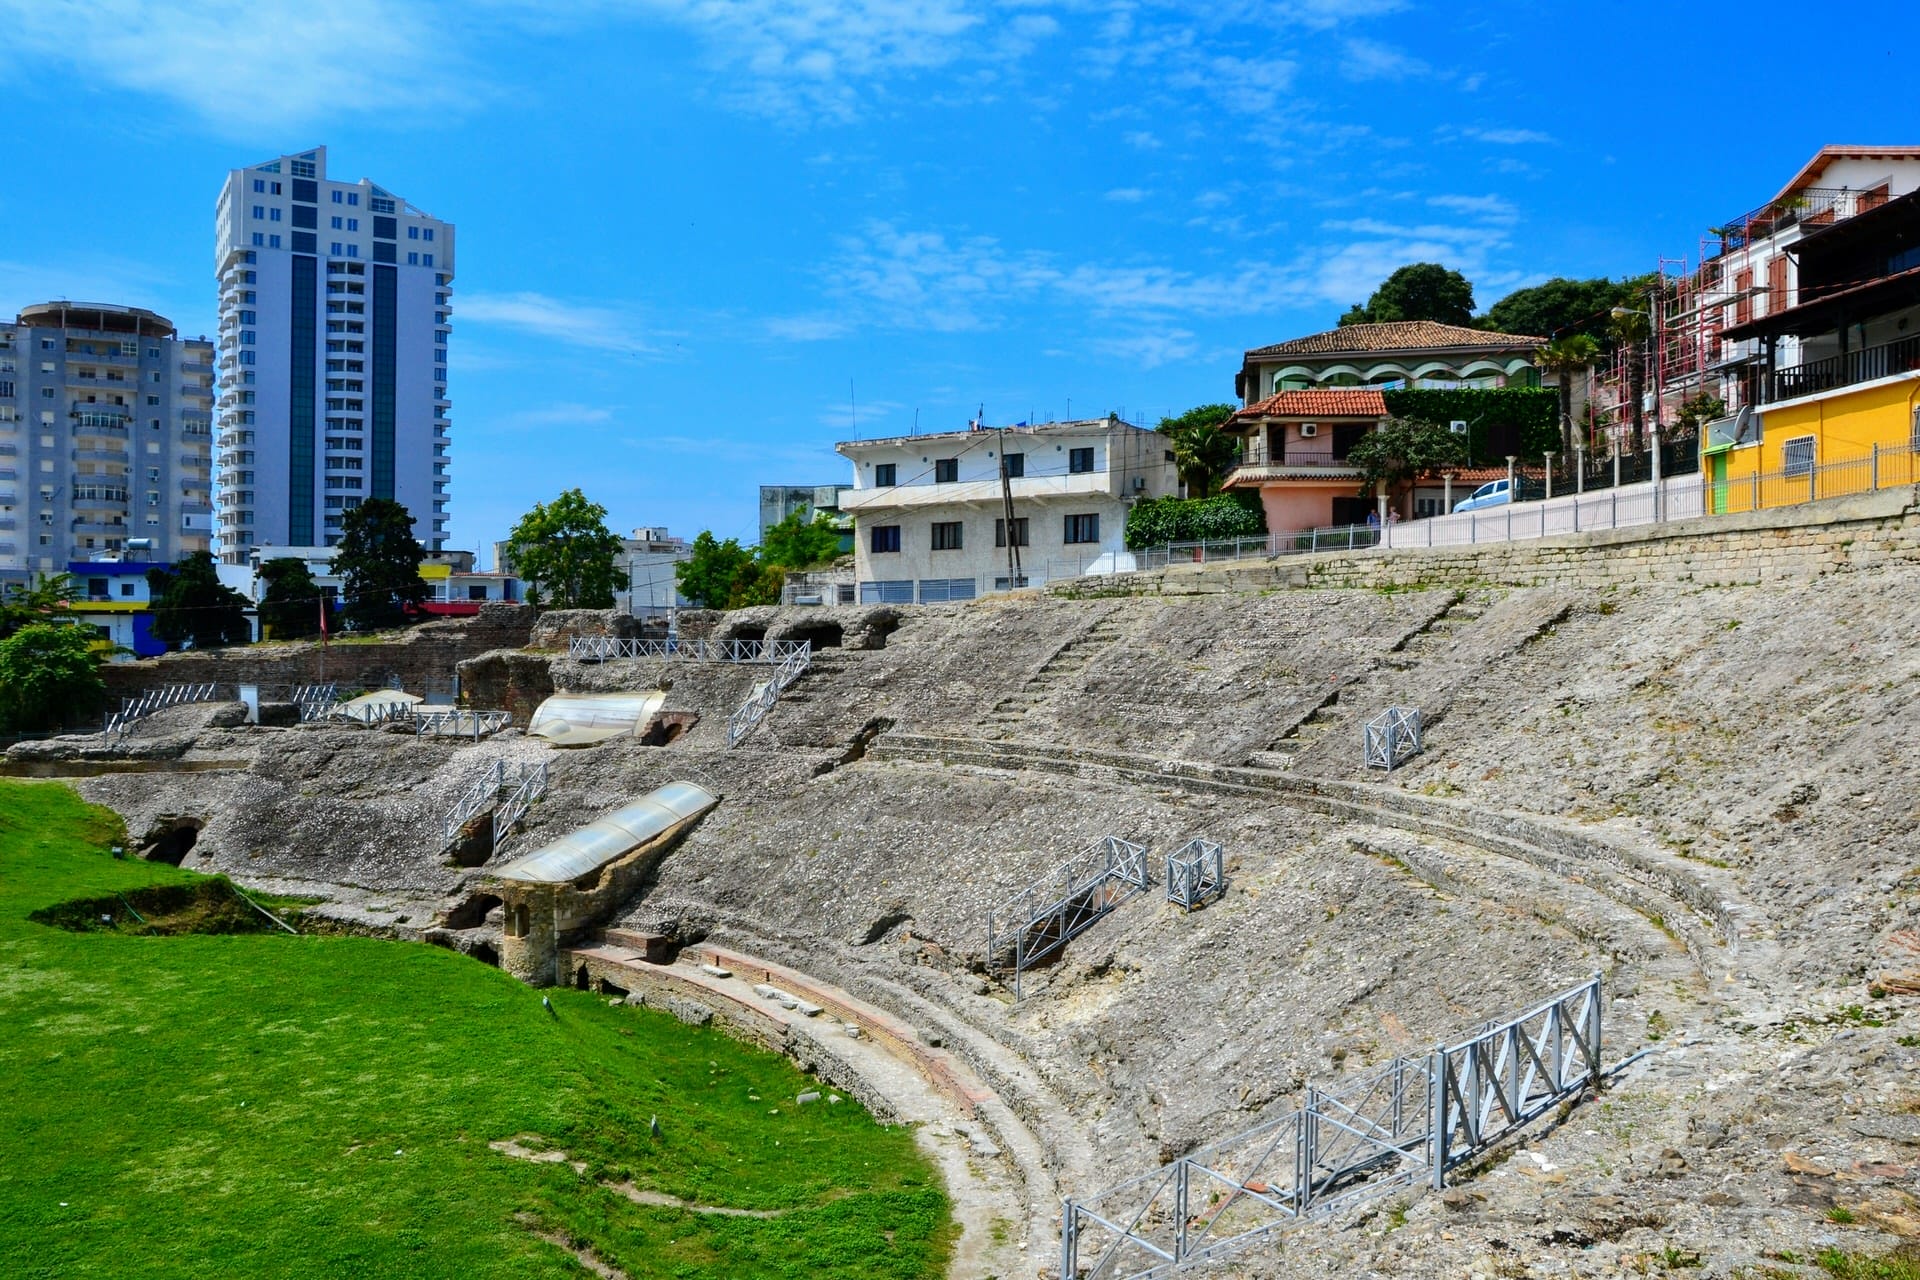 Durrës Amphitheater